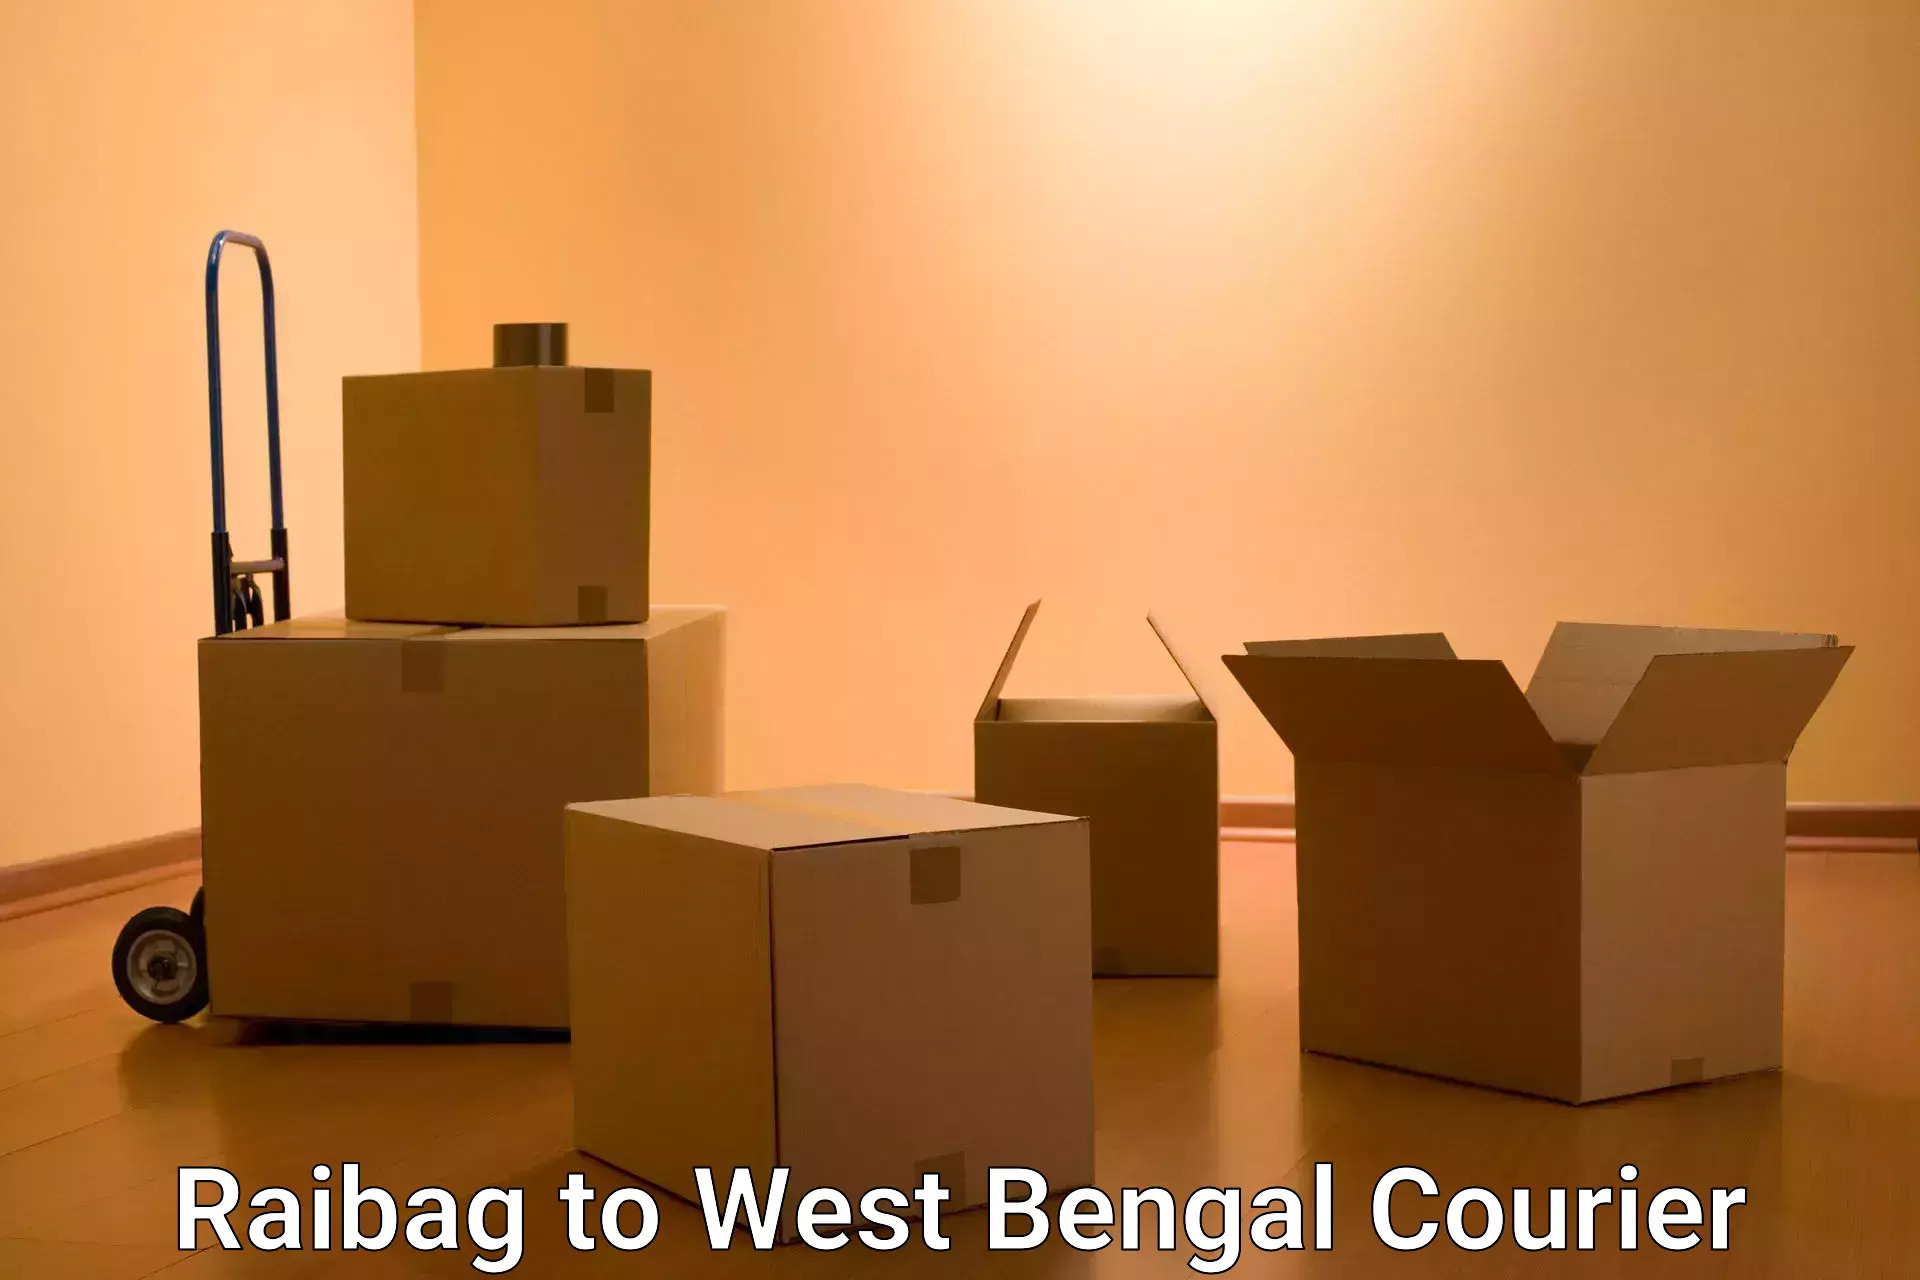 Courier service comparison Raibag to West Bengal